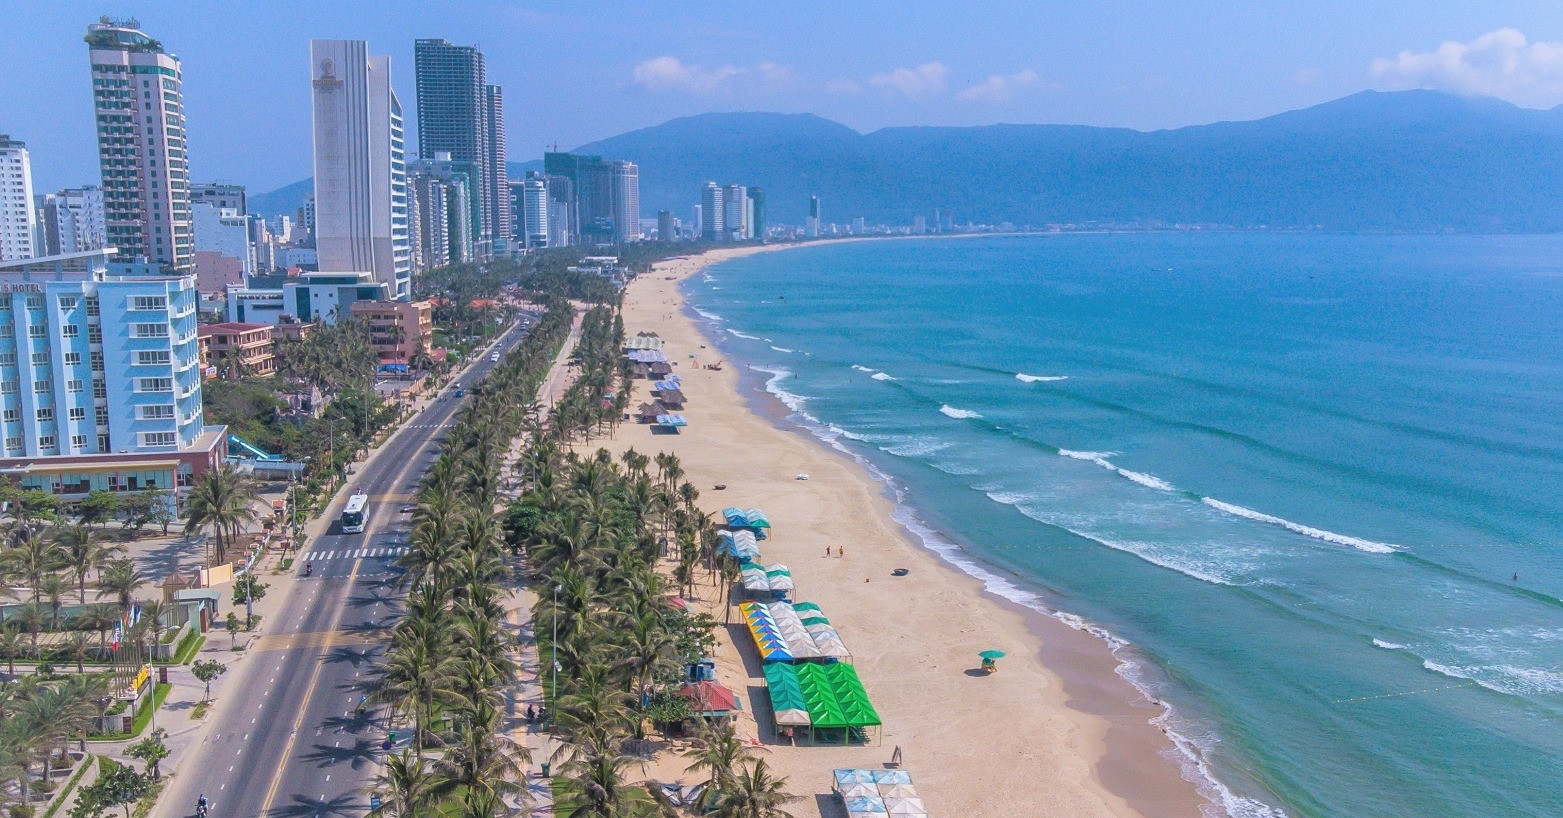 Ngoài bãi biển Mỹ Khê, một đại diện khác của Việt Nam nằm top 10 bãi biển đẹp nhất châu Á được công bố là bãi biển An Bàng (Hội An, Quảng Nam). Trong đó bãi biển An Bàng xếp thứ 5 và Mỹ Khê xếp thứ 6.